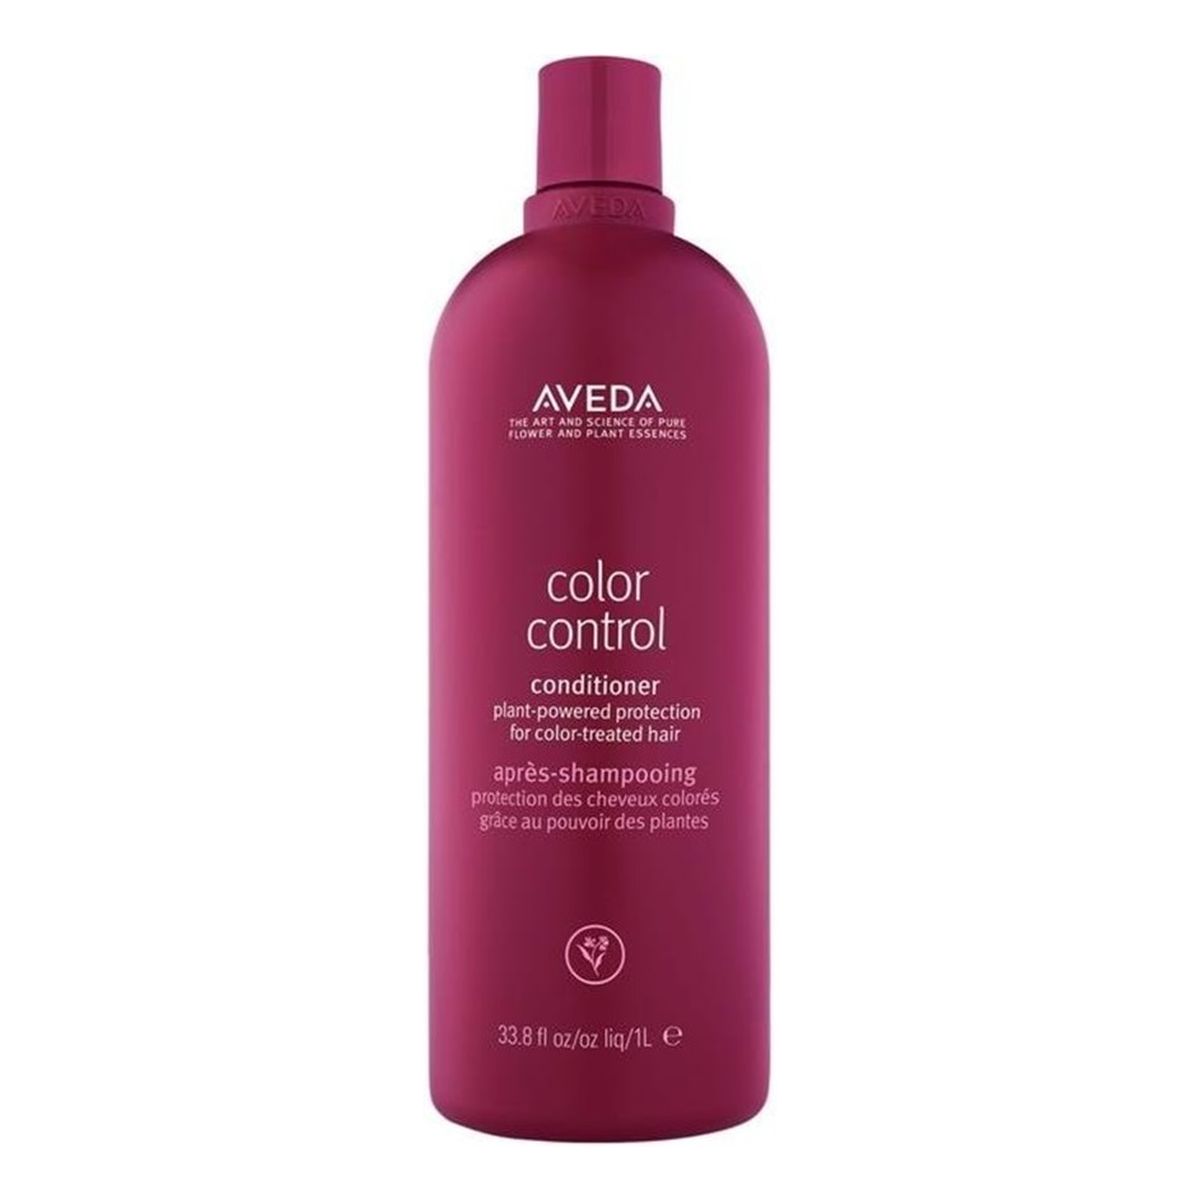 Aveda Color control conditioner odżywka do włosów farbowanych 1000ml